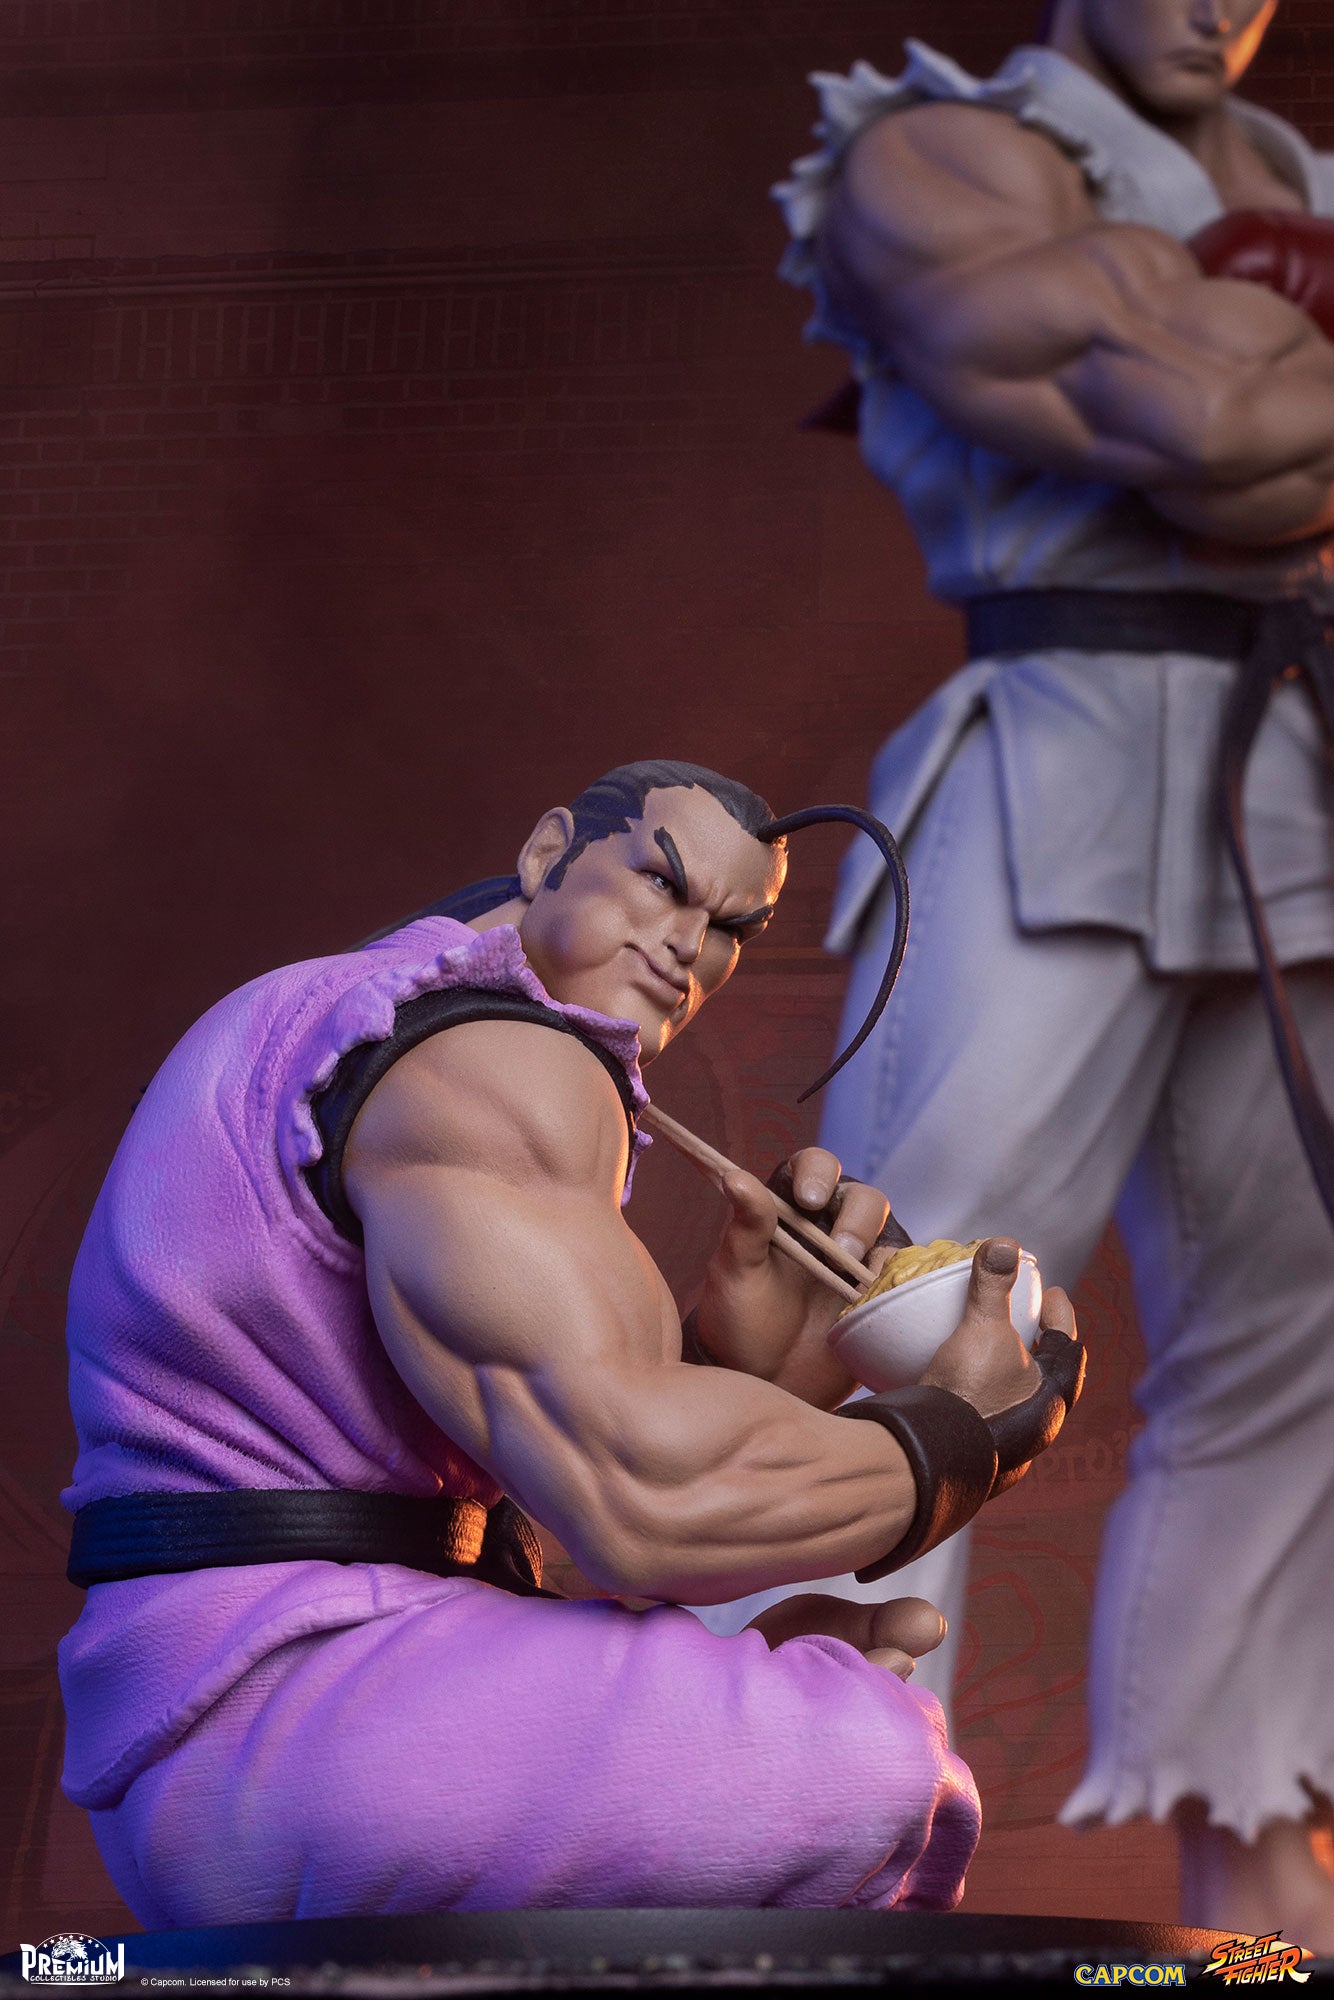 Ryu & Dan - Street Fighter - PCS 1/10 Scale Statue